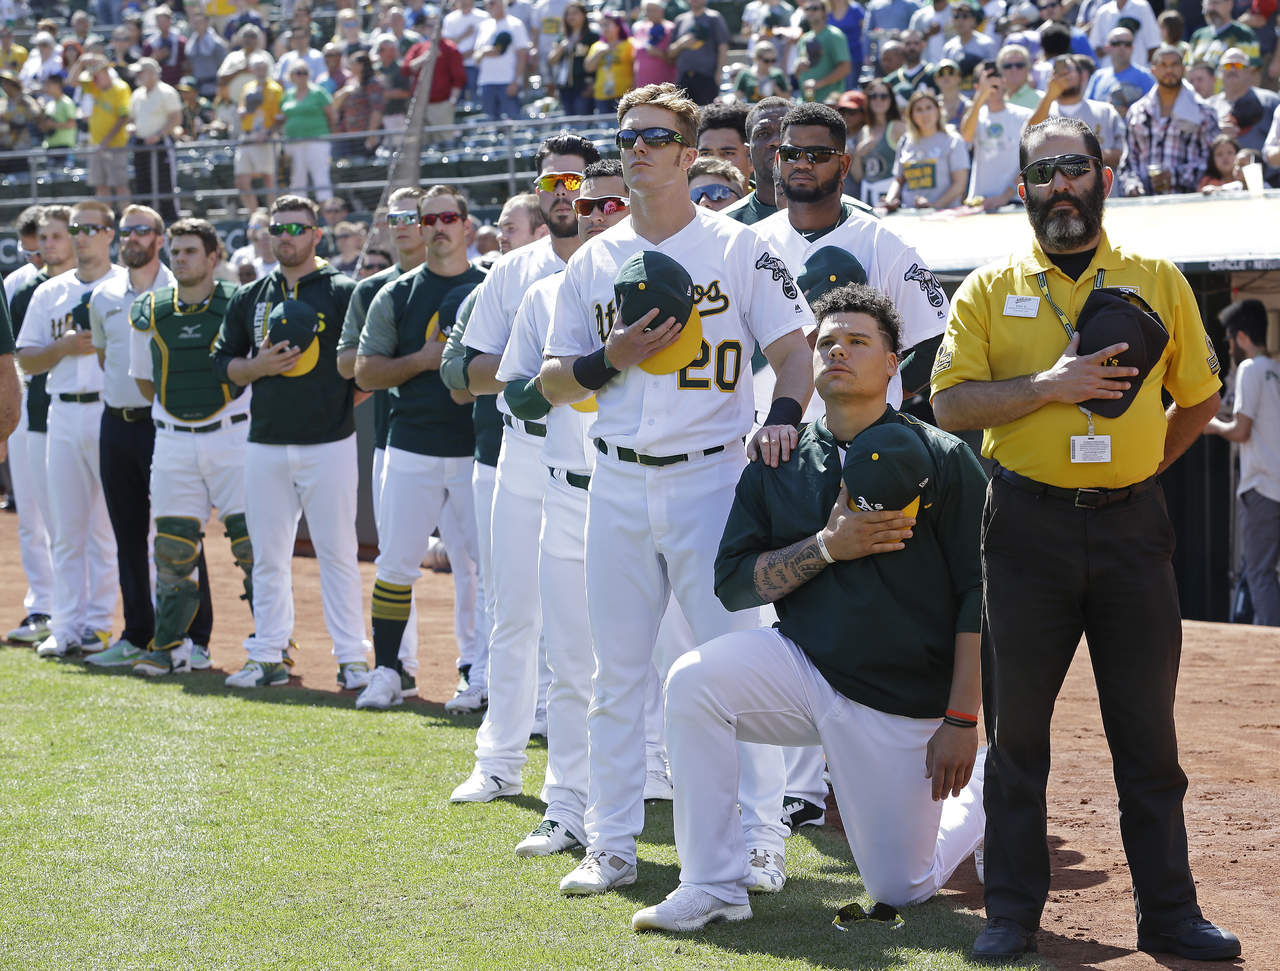 El pelotero Bruce Maxwell se convirtió en el primer jugador de beisbol de las Grandes Ligas que se arrodilló durante el himno nacional. (AP)